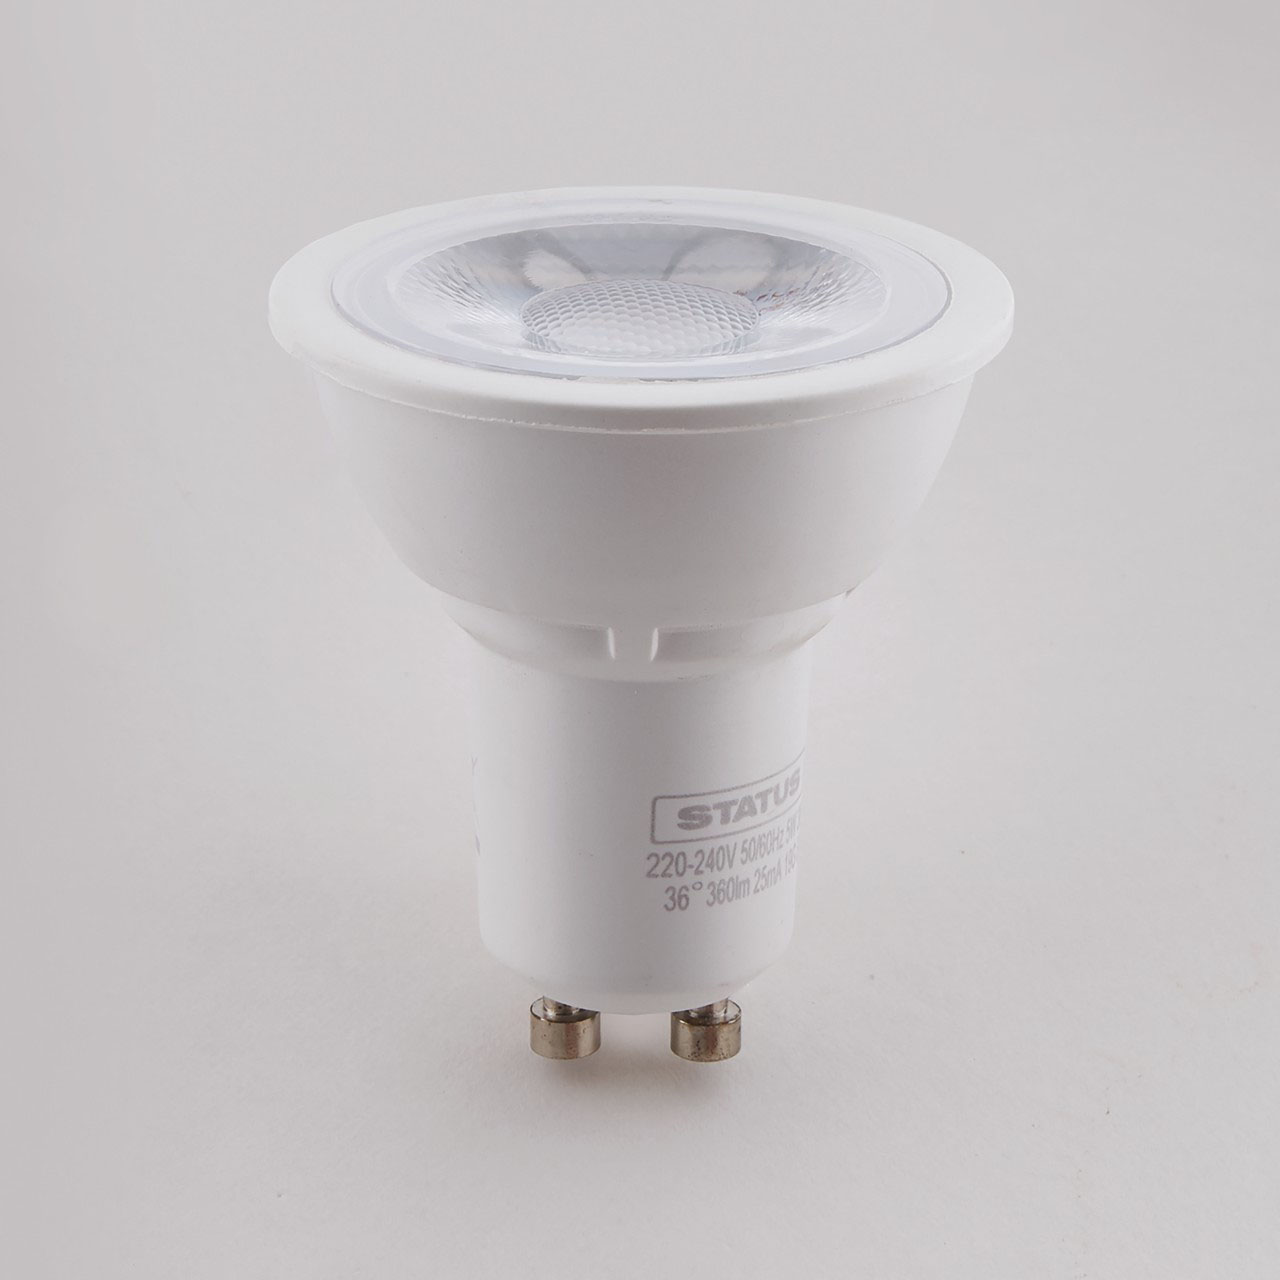 LED GU10 Spotlight Bulbs